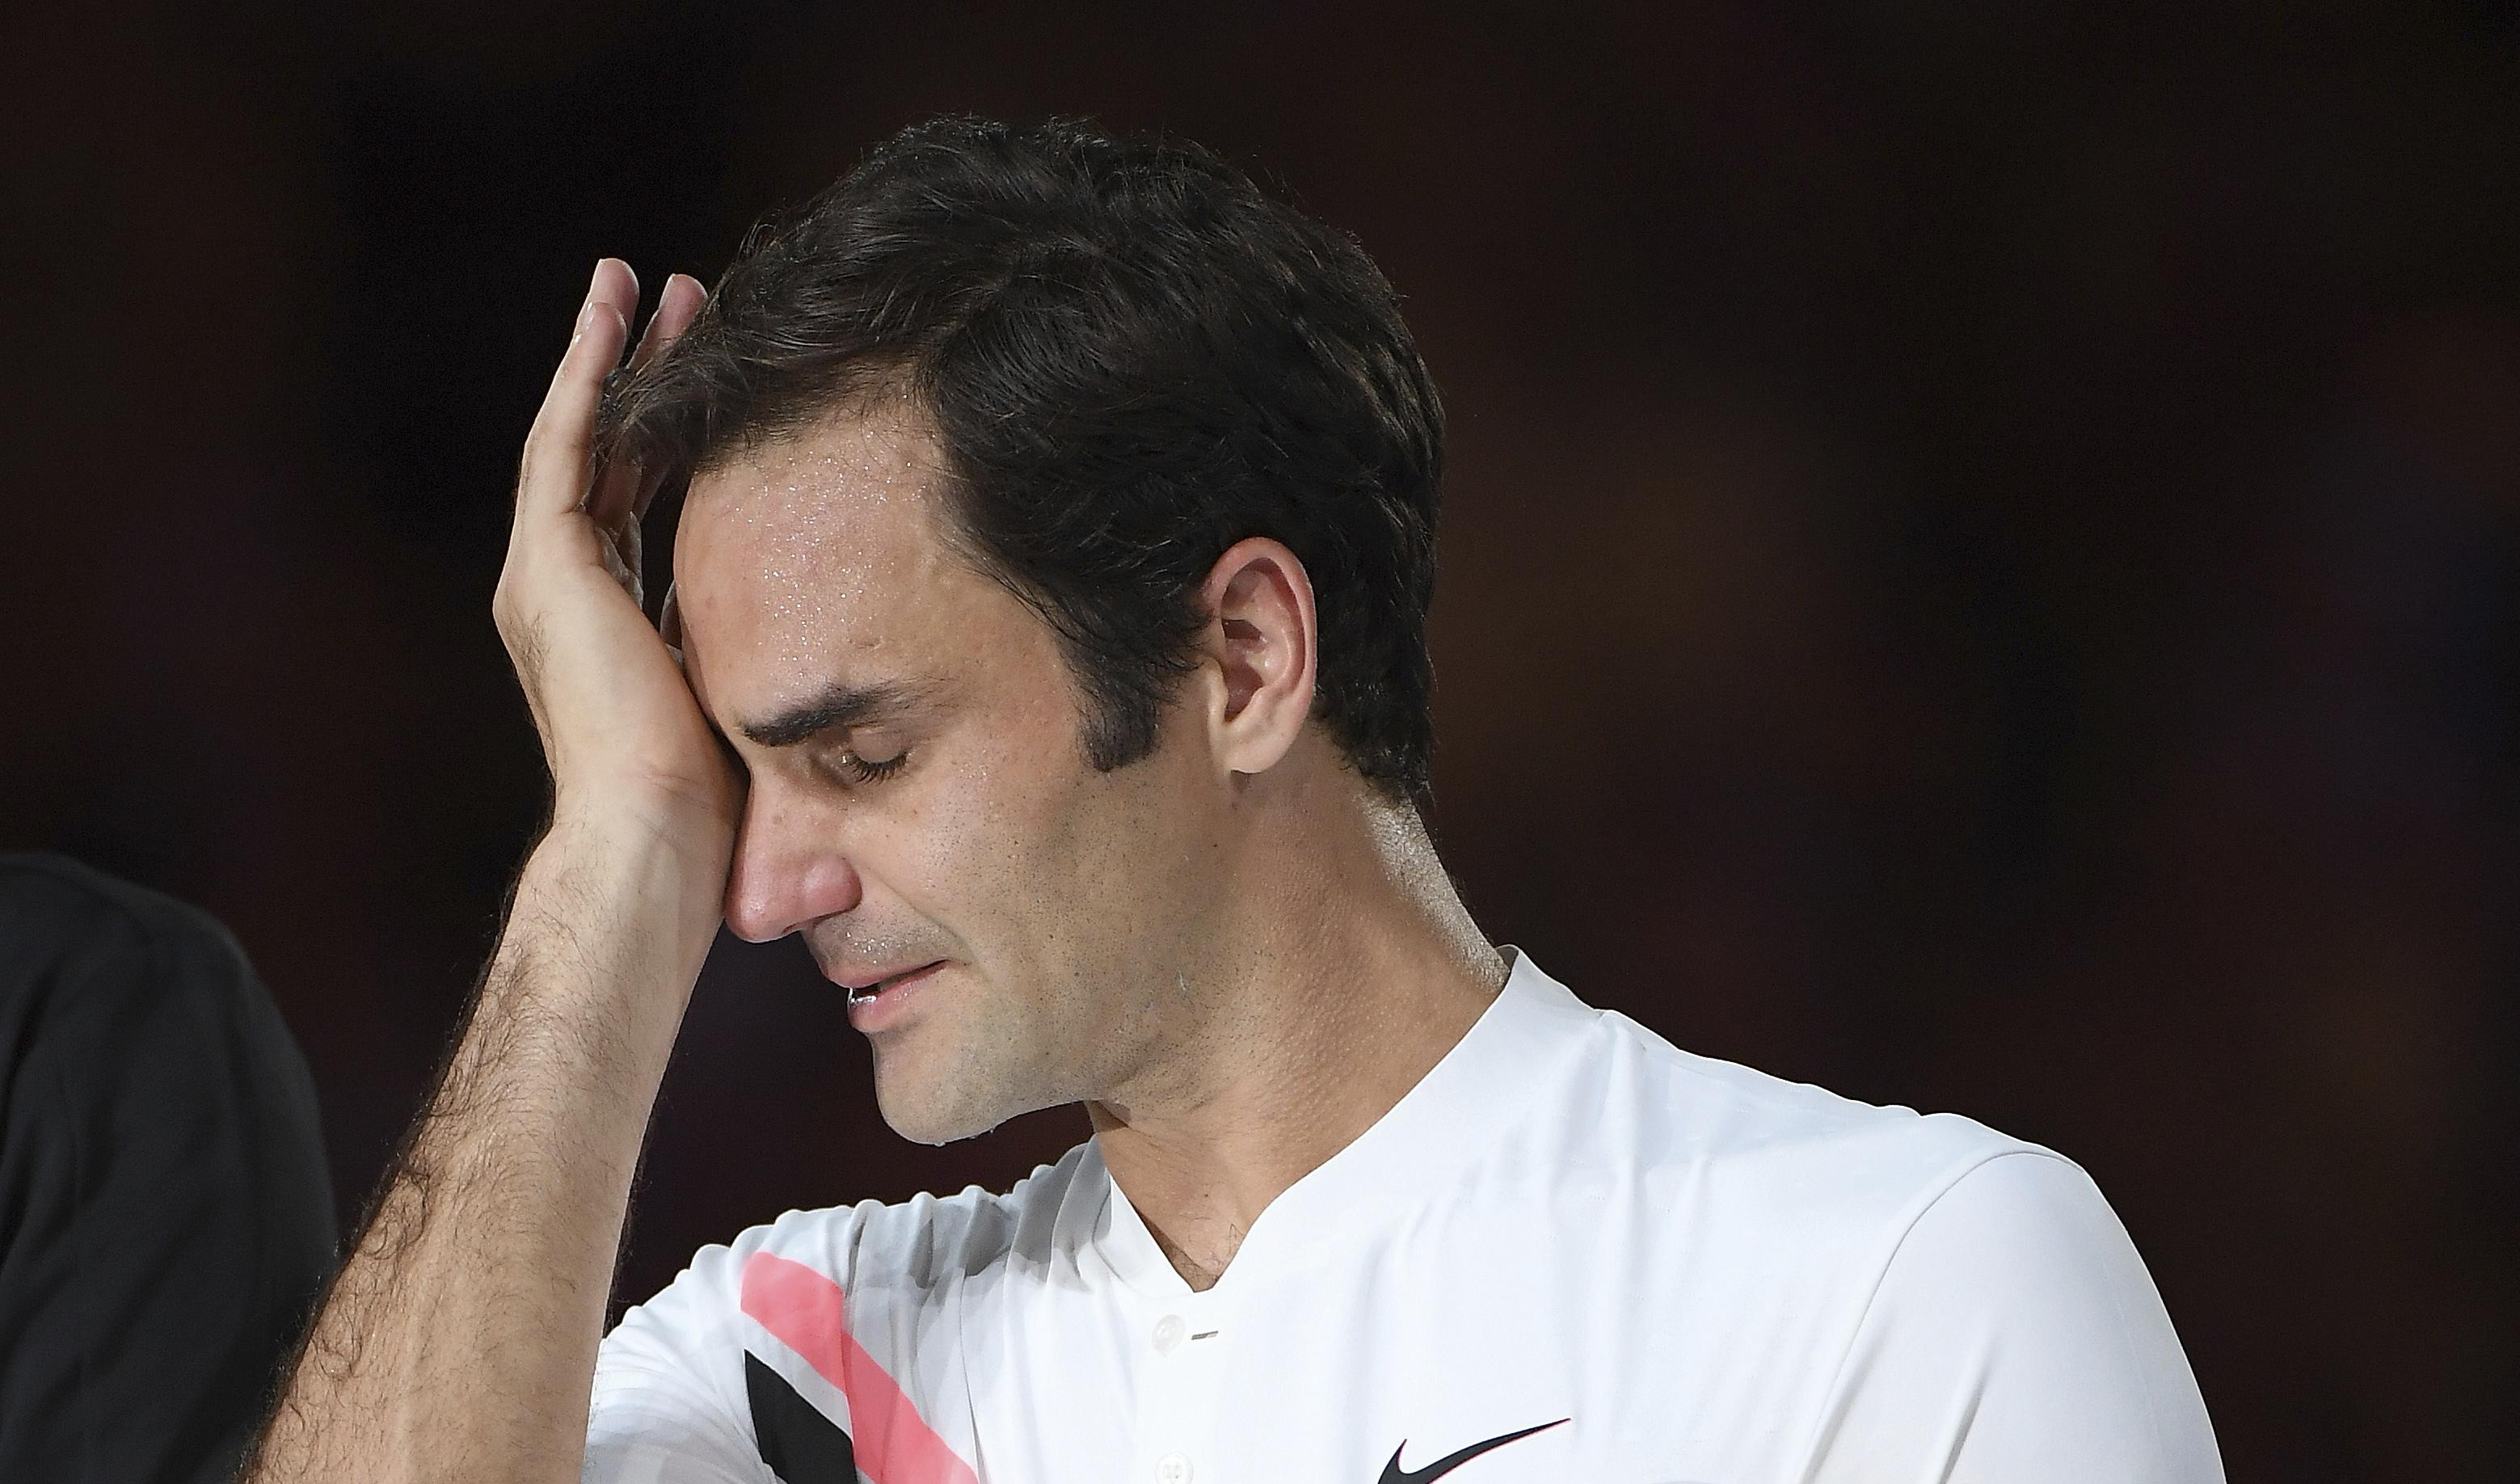 TO GA JE UNIŠTILO! Federer briznuo u plač /VIDEO/